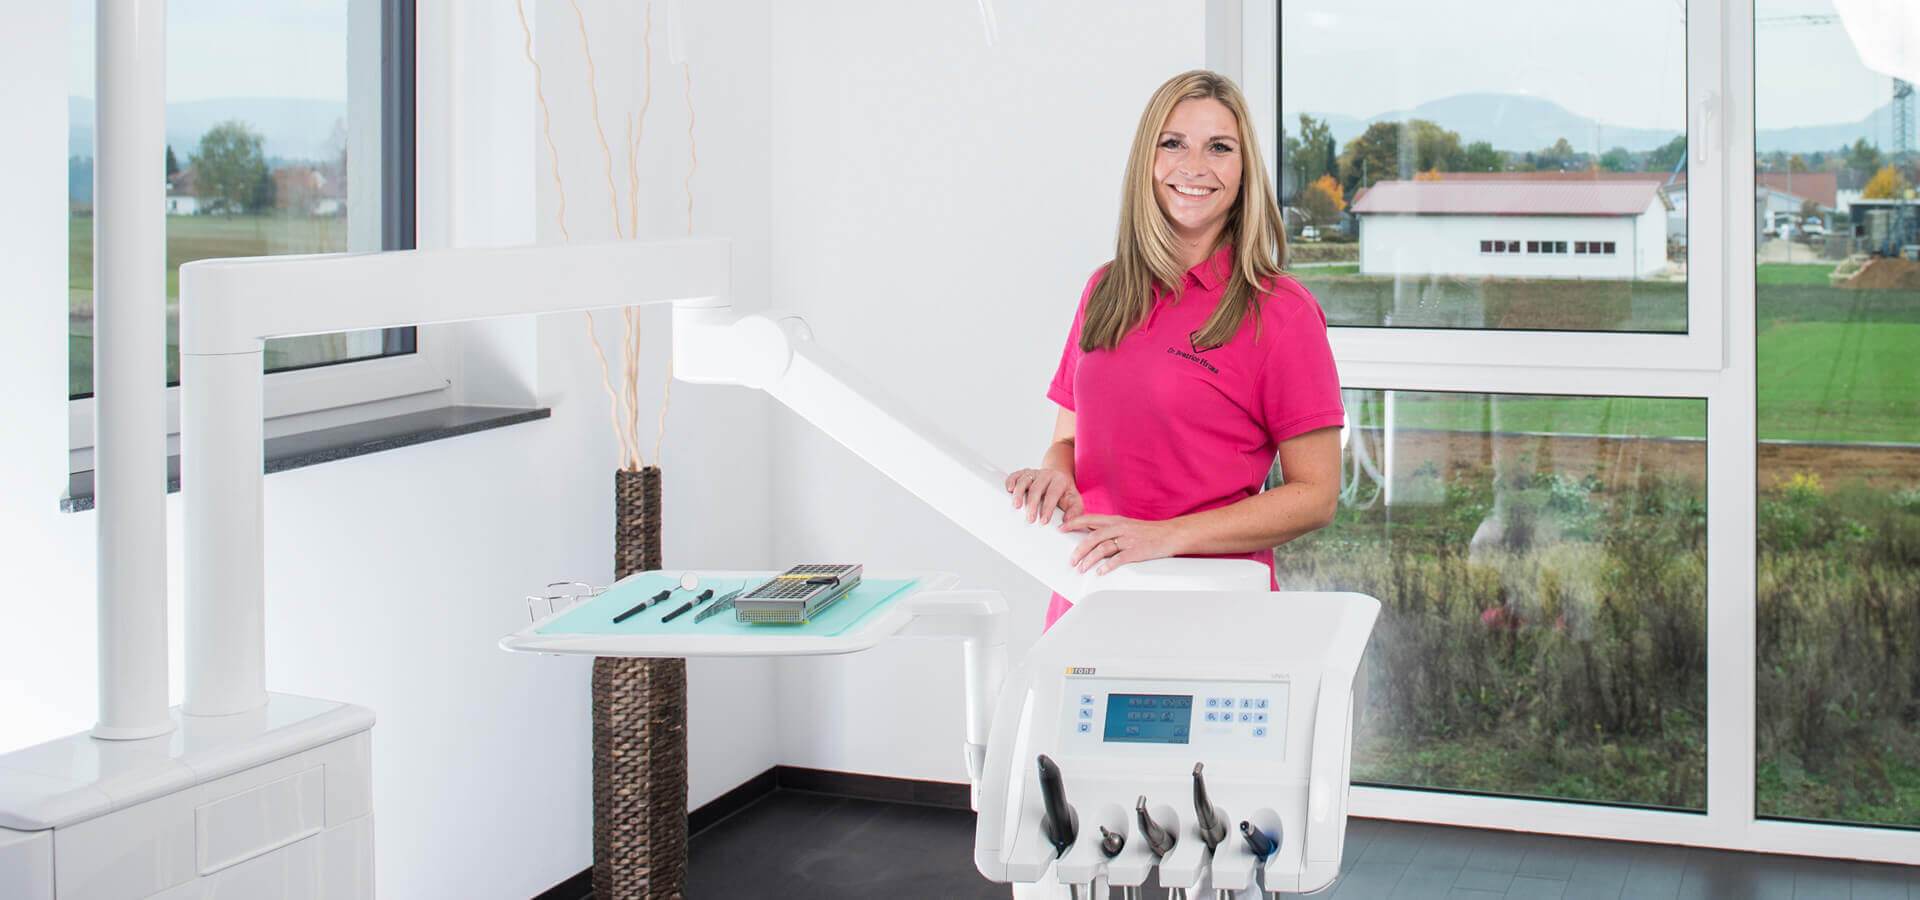 Zahnärztin und Partnerin der Zahnarztpraxis Hrusa erklärt: "Die intuitive Bedienweise sowie die umfangreichen Features von charly überzeugen uns täglich."